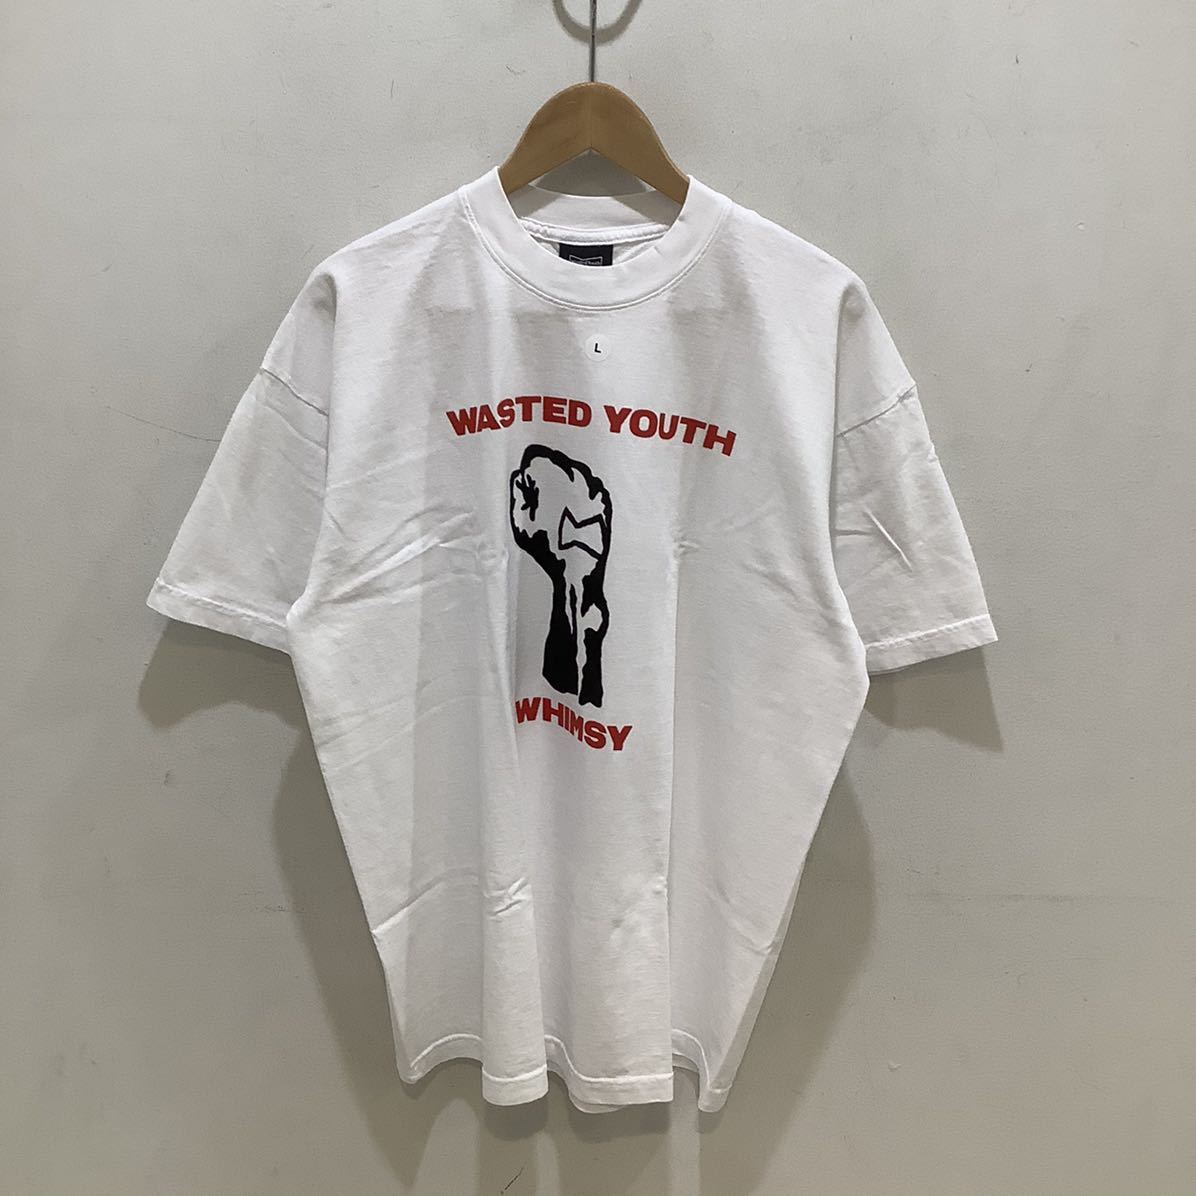 上品なスタイル Youth ×Wested ウィムジー WHIMSY ウェステッドユース 521371 サイズL ホワイト Tシャツ コラボ 柄もの